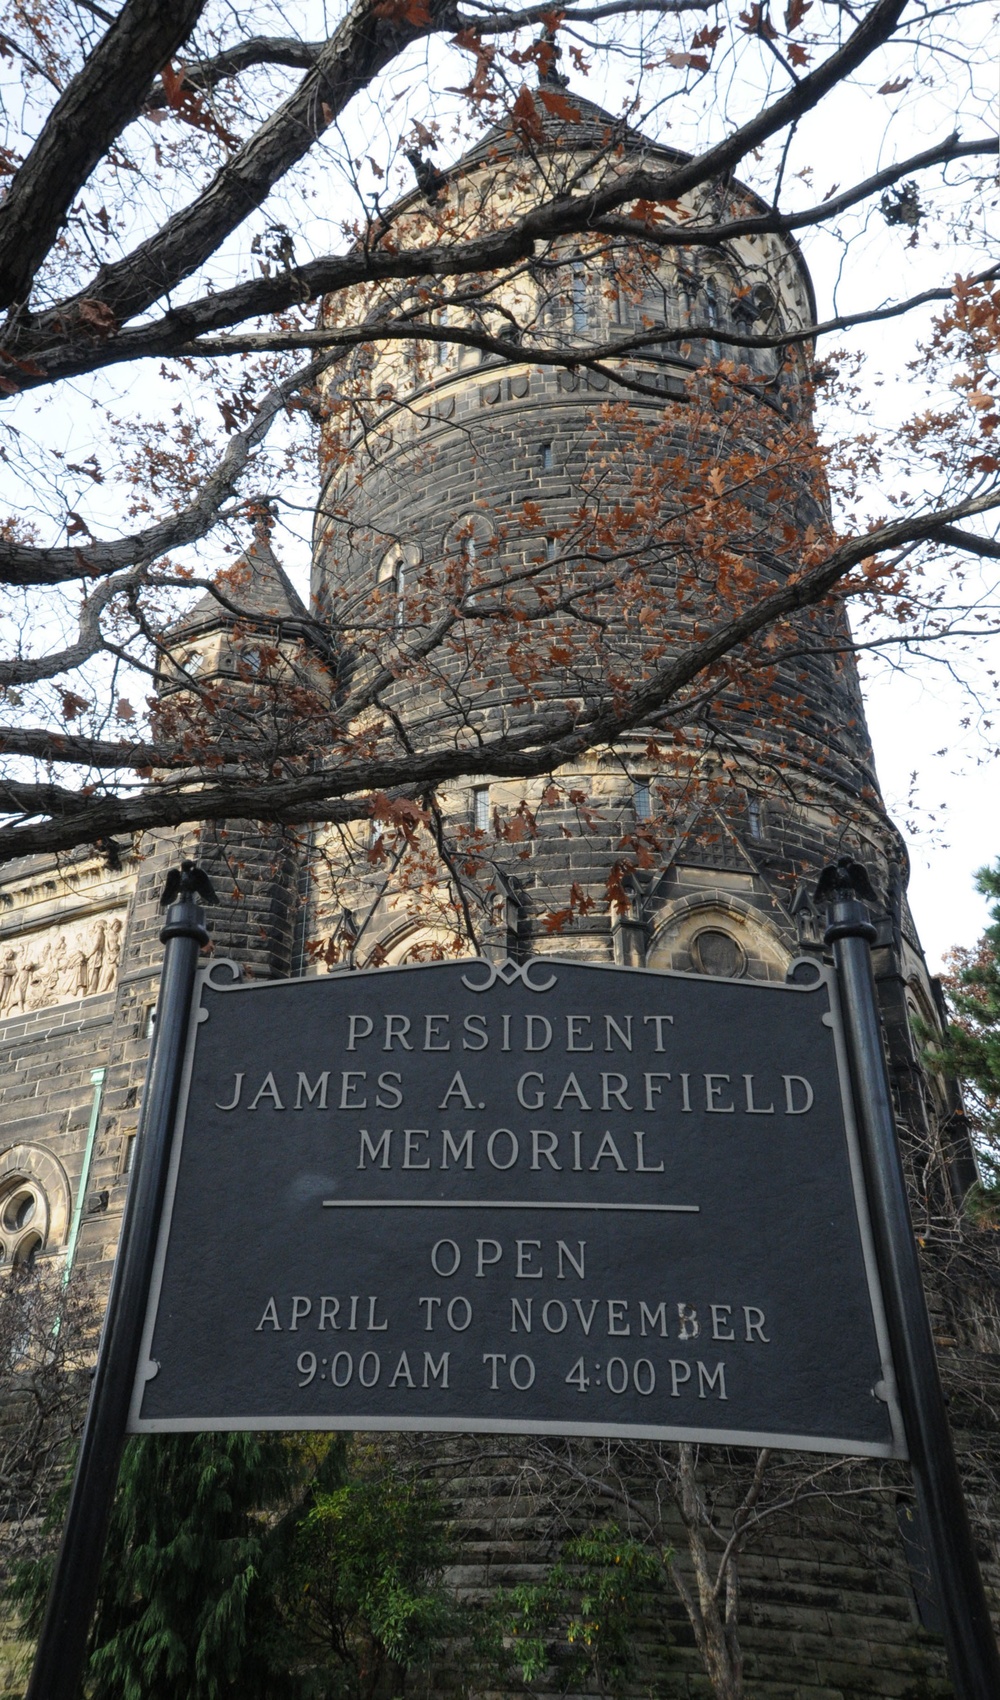 President James A. Garfield Memorial